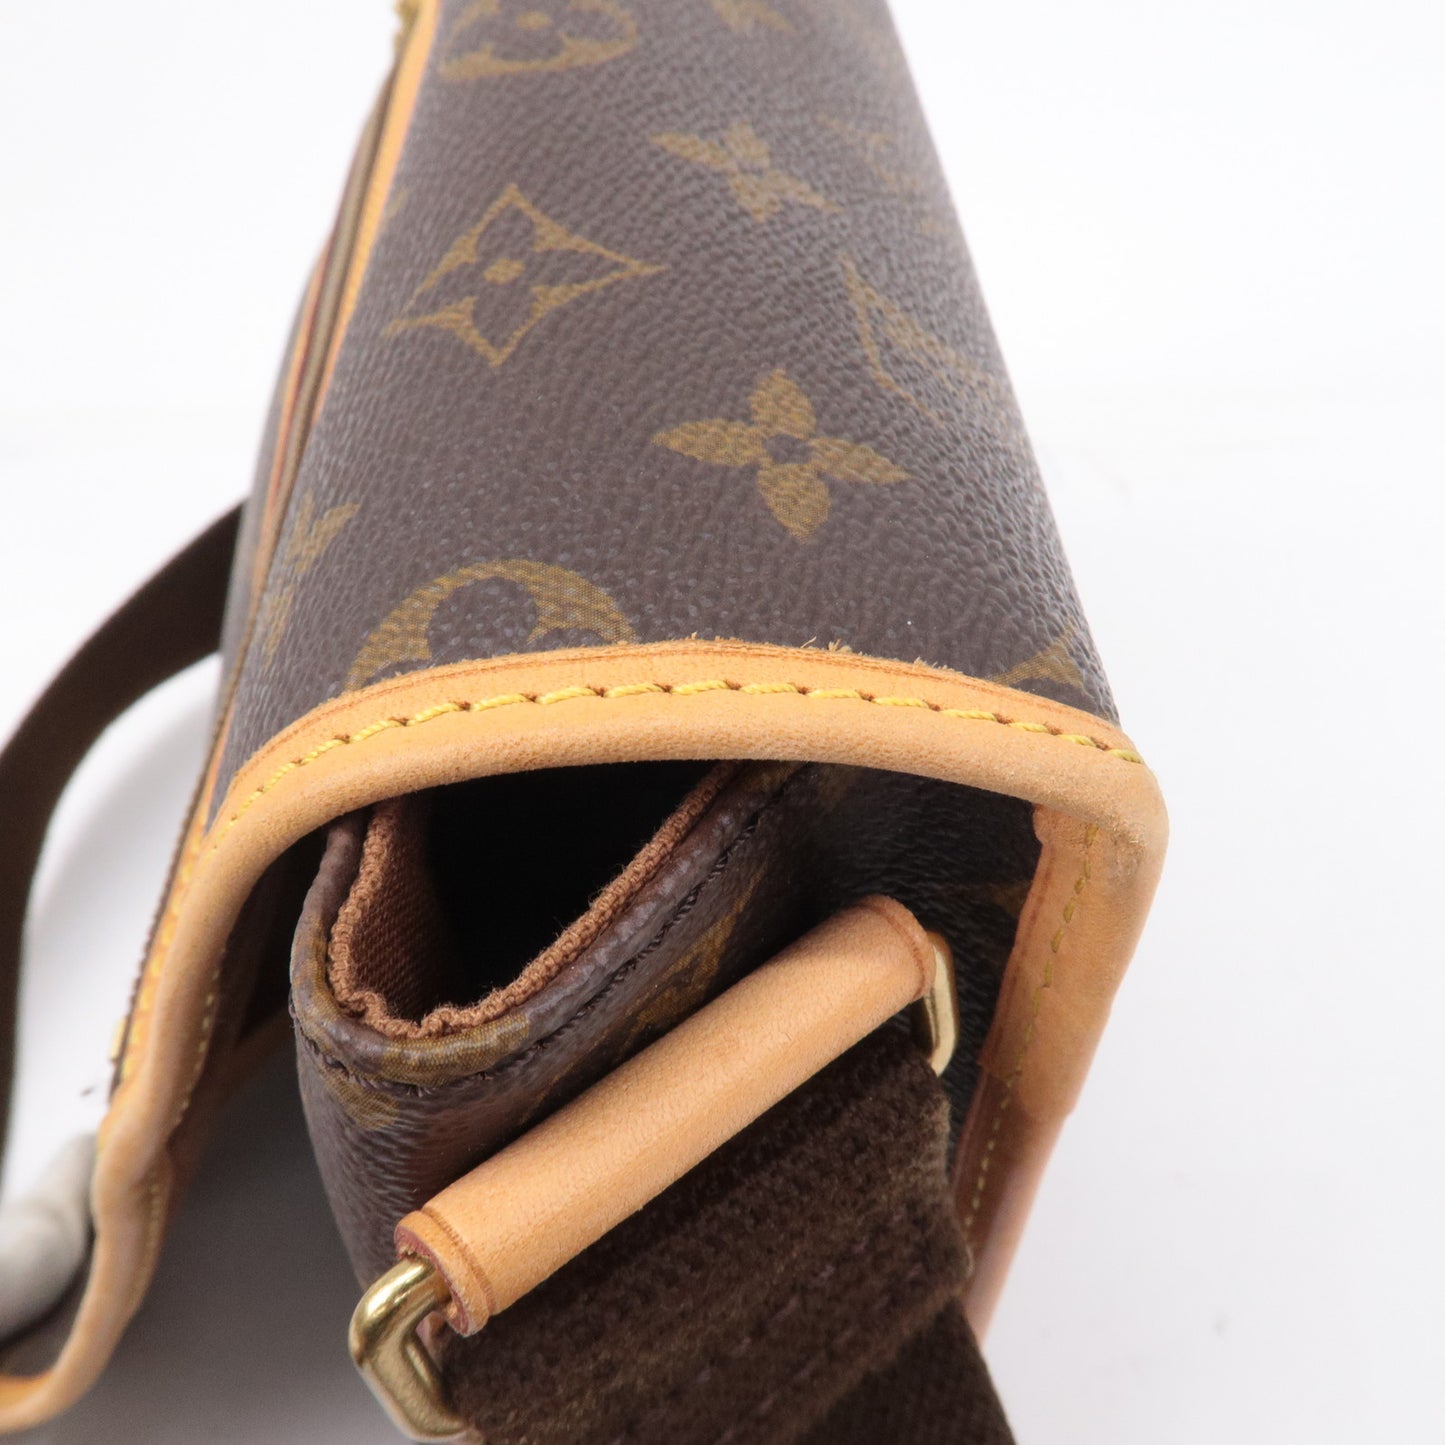 Authe-Louis-Vuitton-Monogram-Messenger-Bosphore-PM-Shoulder-Bag-M40106